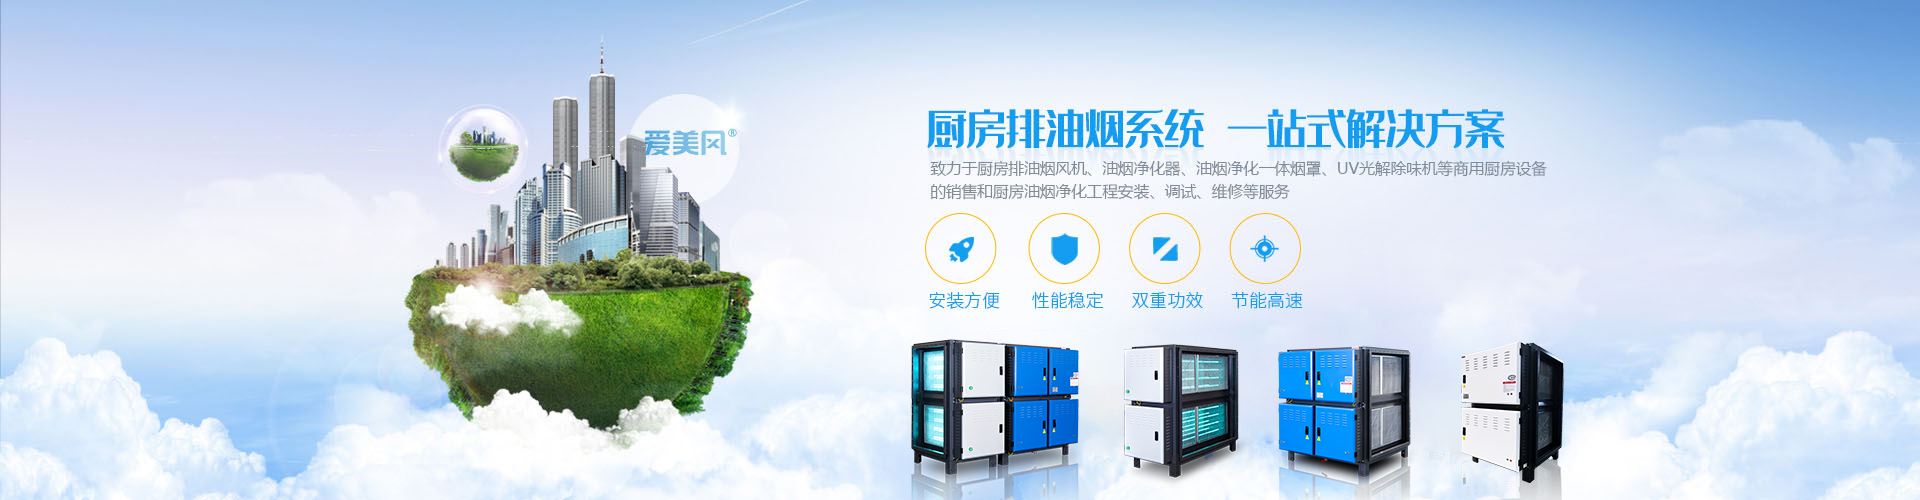 bwin·必赢(中国)唯一官方网站_产品1676